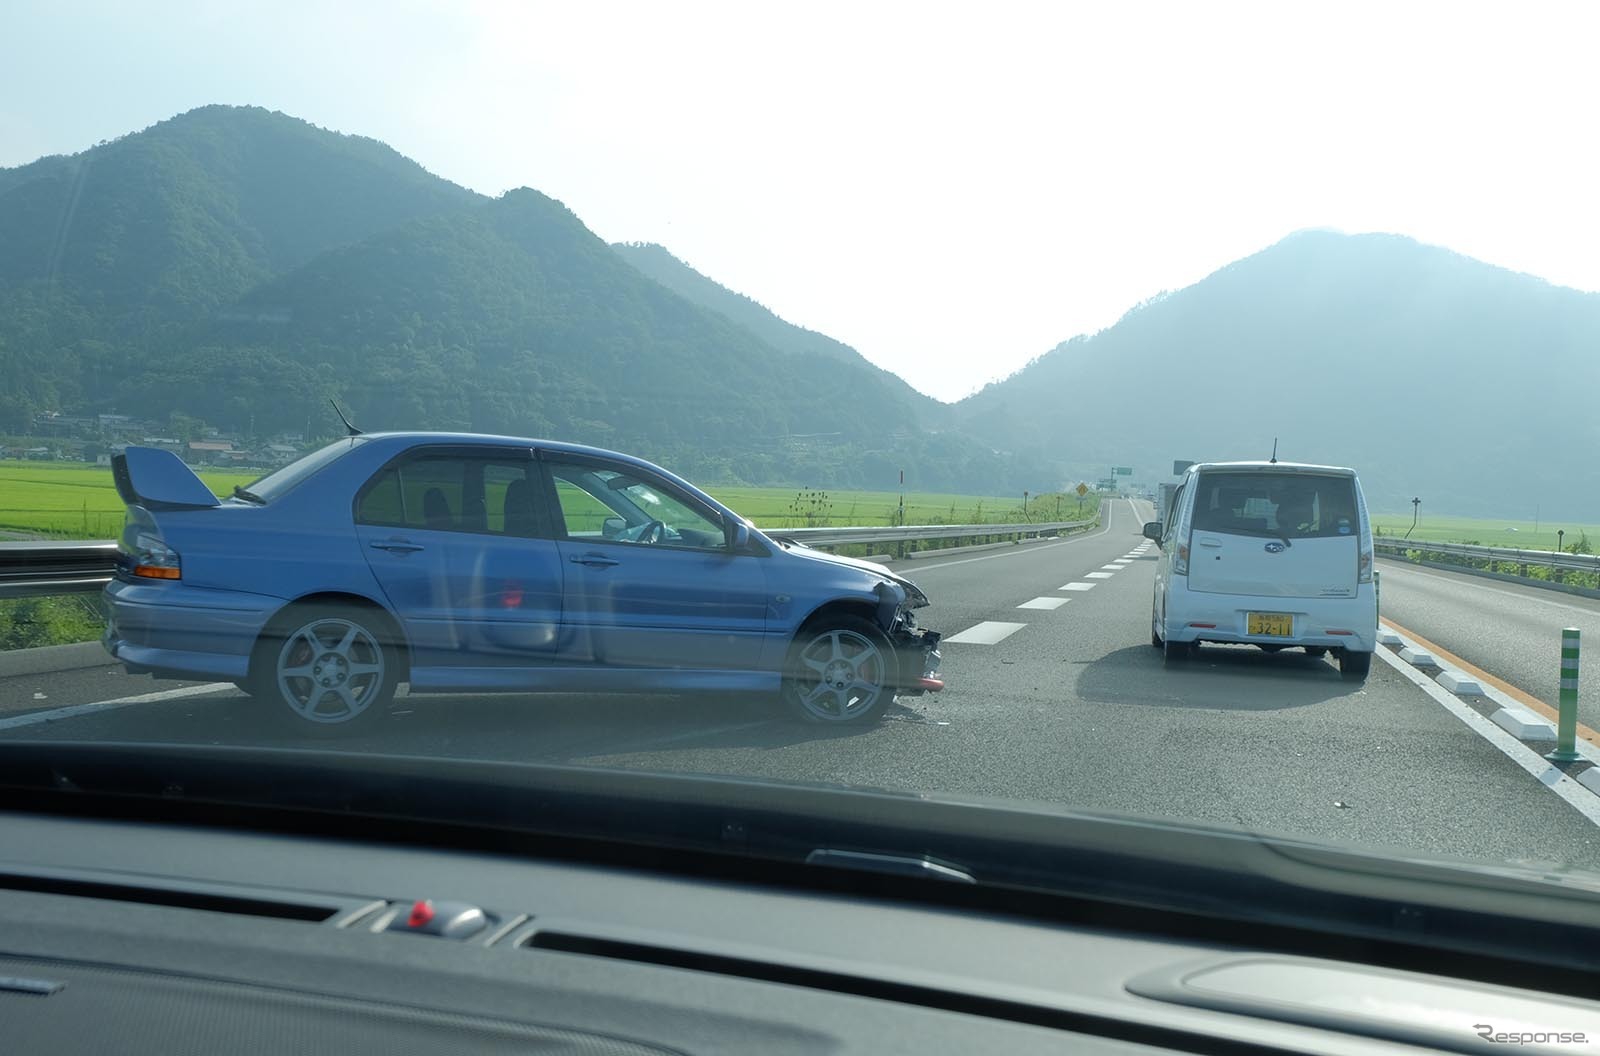 鳥取付近の山陰自動車道を走行中。やたら渋滞していると思いきや、事故発生であった。